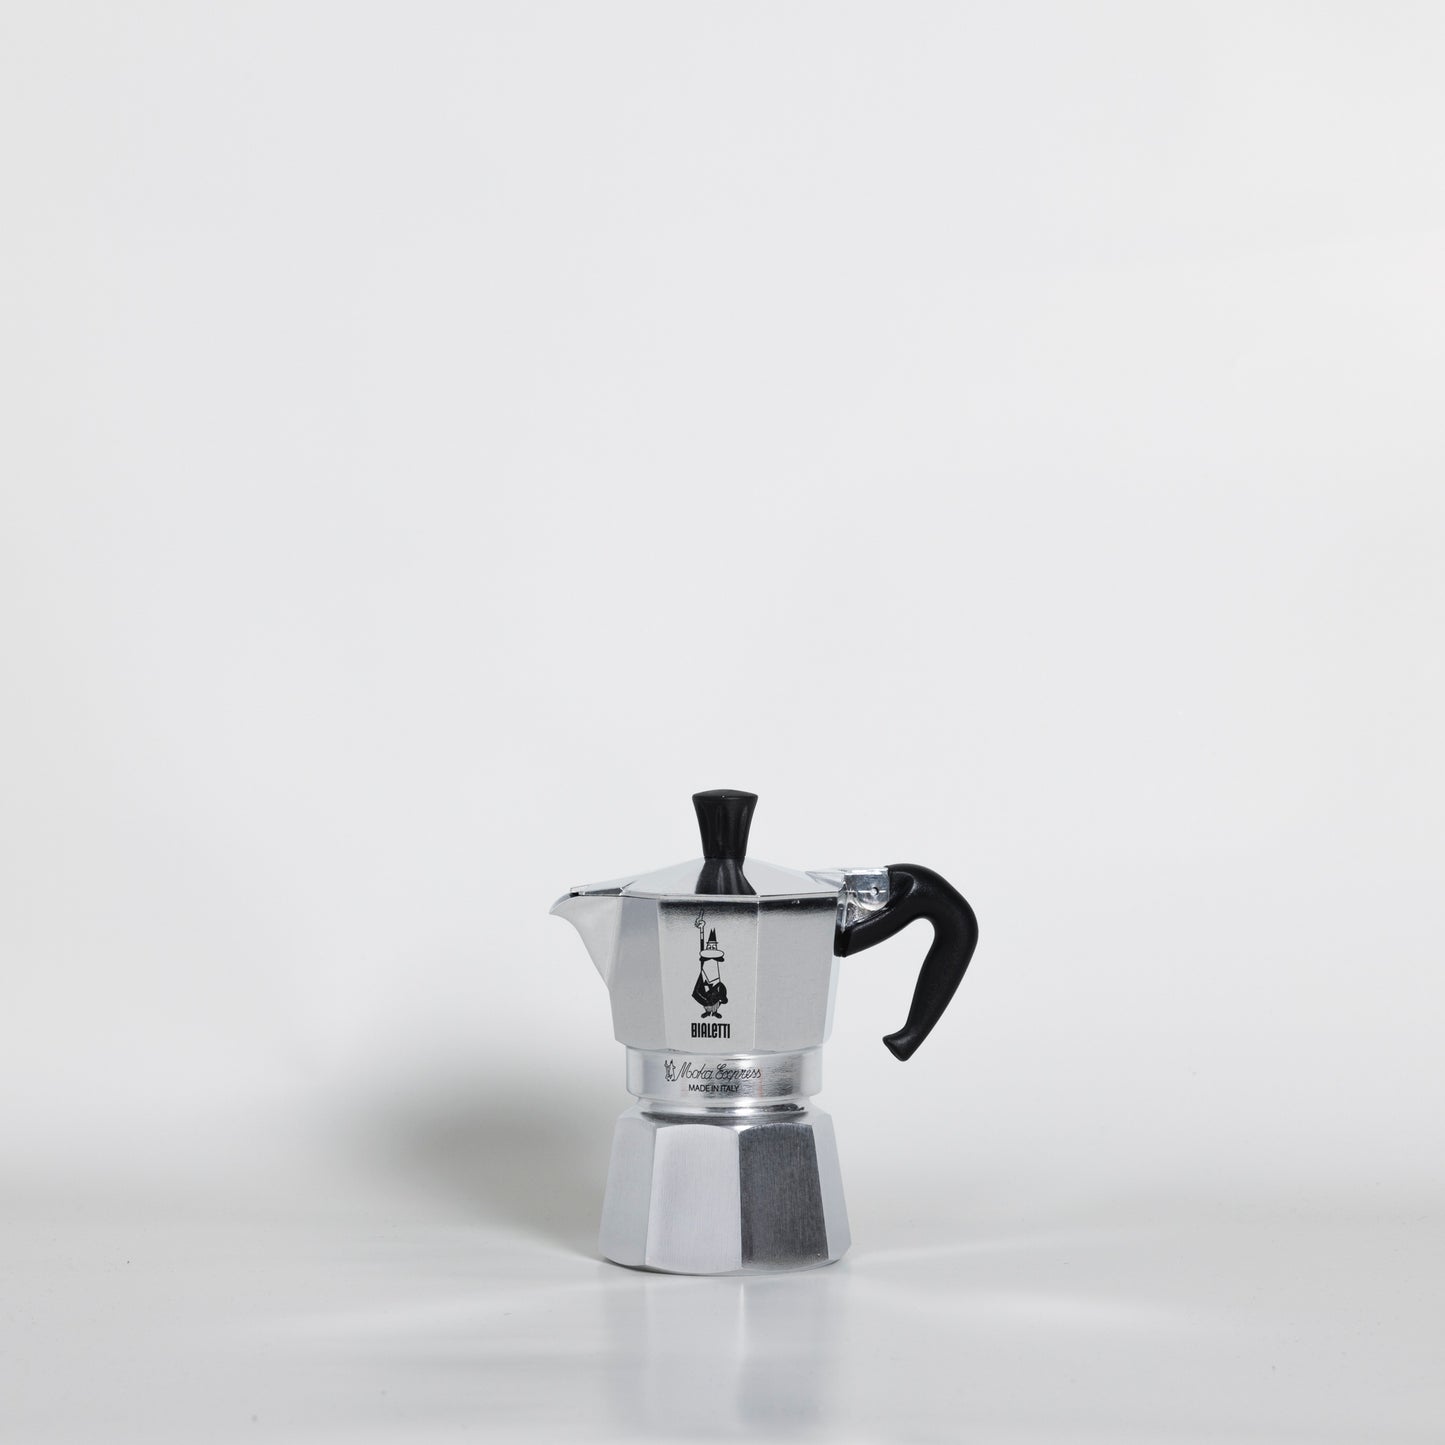 NEW 2 CUP BIALETTI MOKA Espresso Coffee Maker Percolator